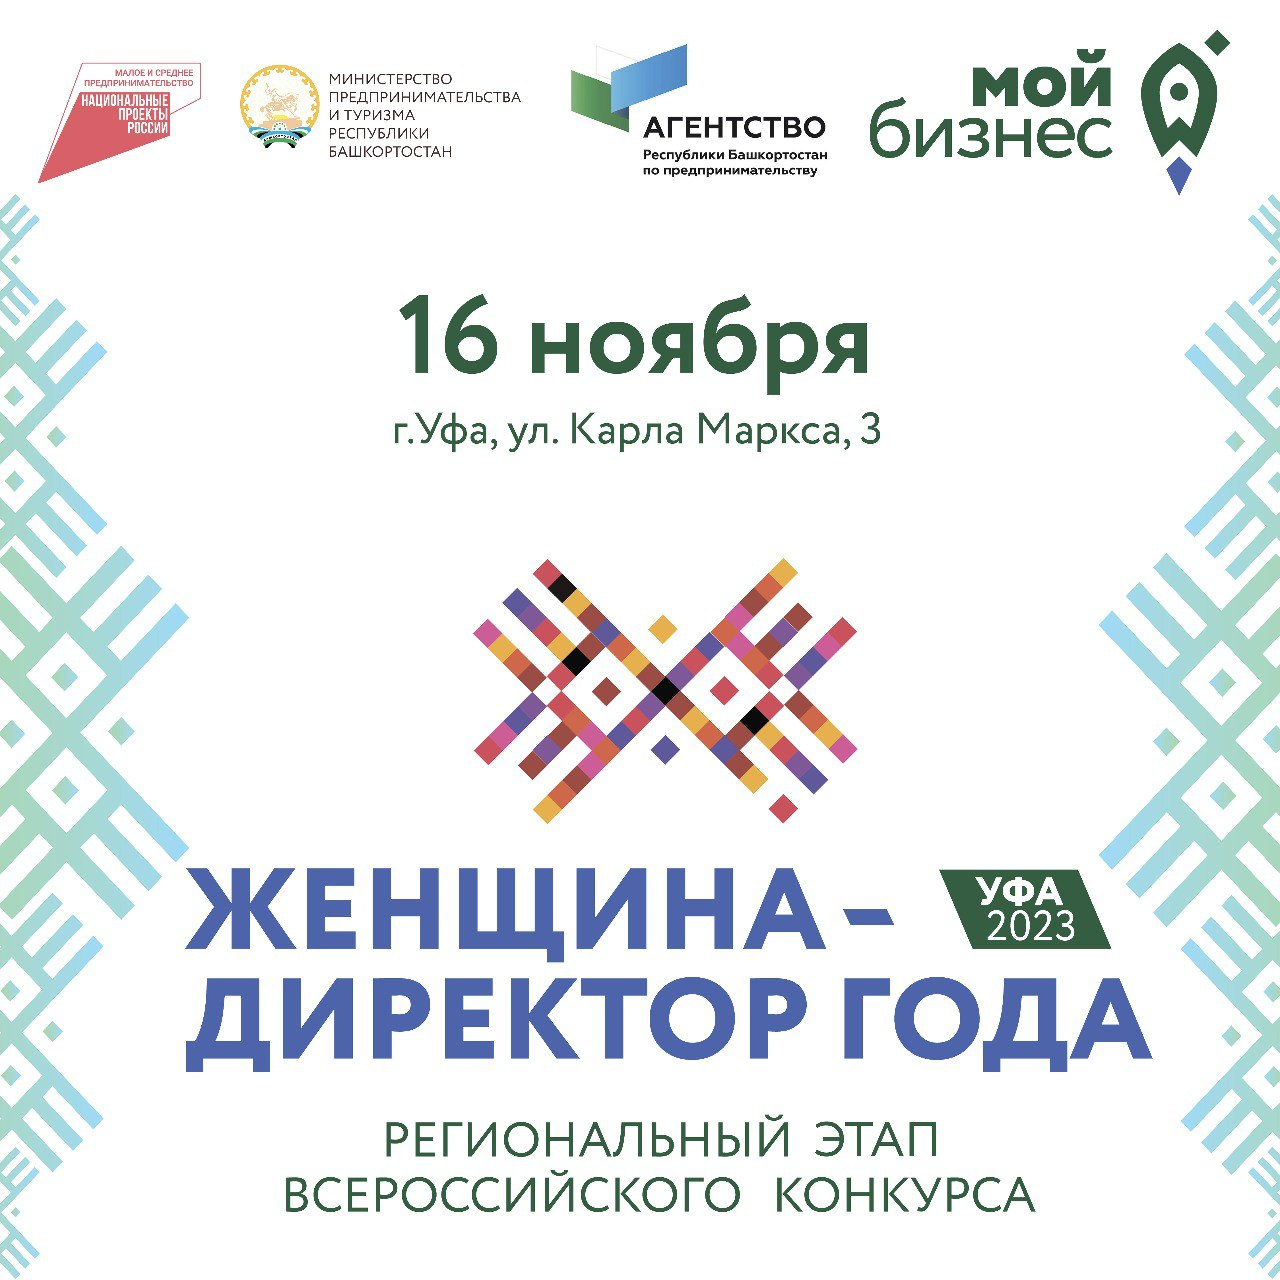 Уже в этот четверг состоится Региональный этап Всероссийского конкурса «Женщина — директор года»-slide